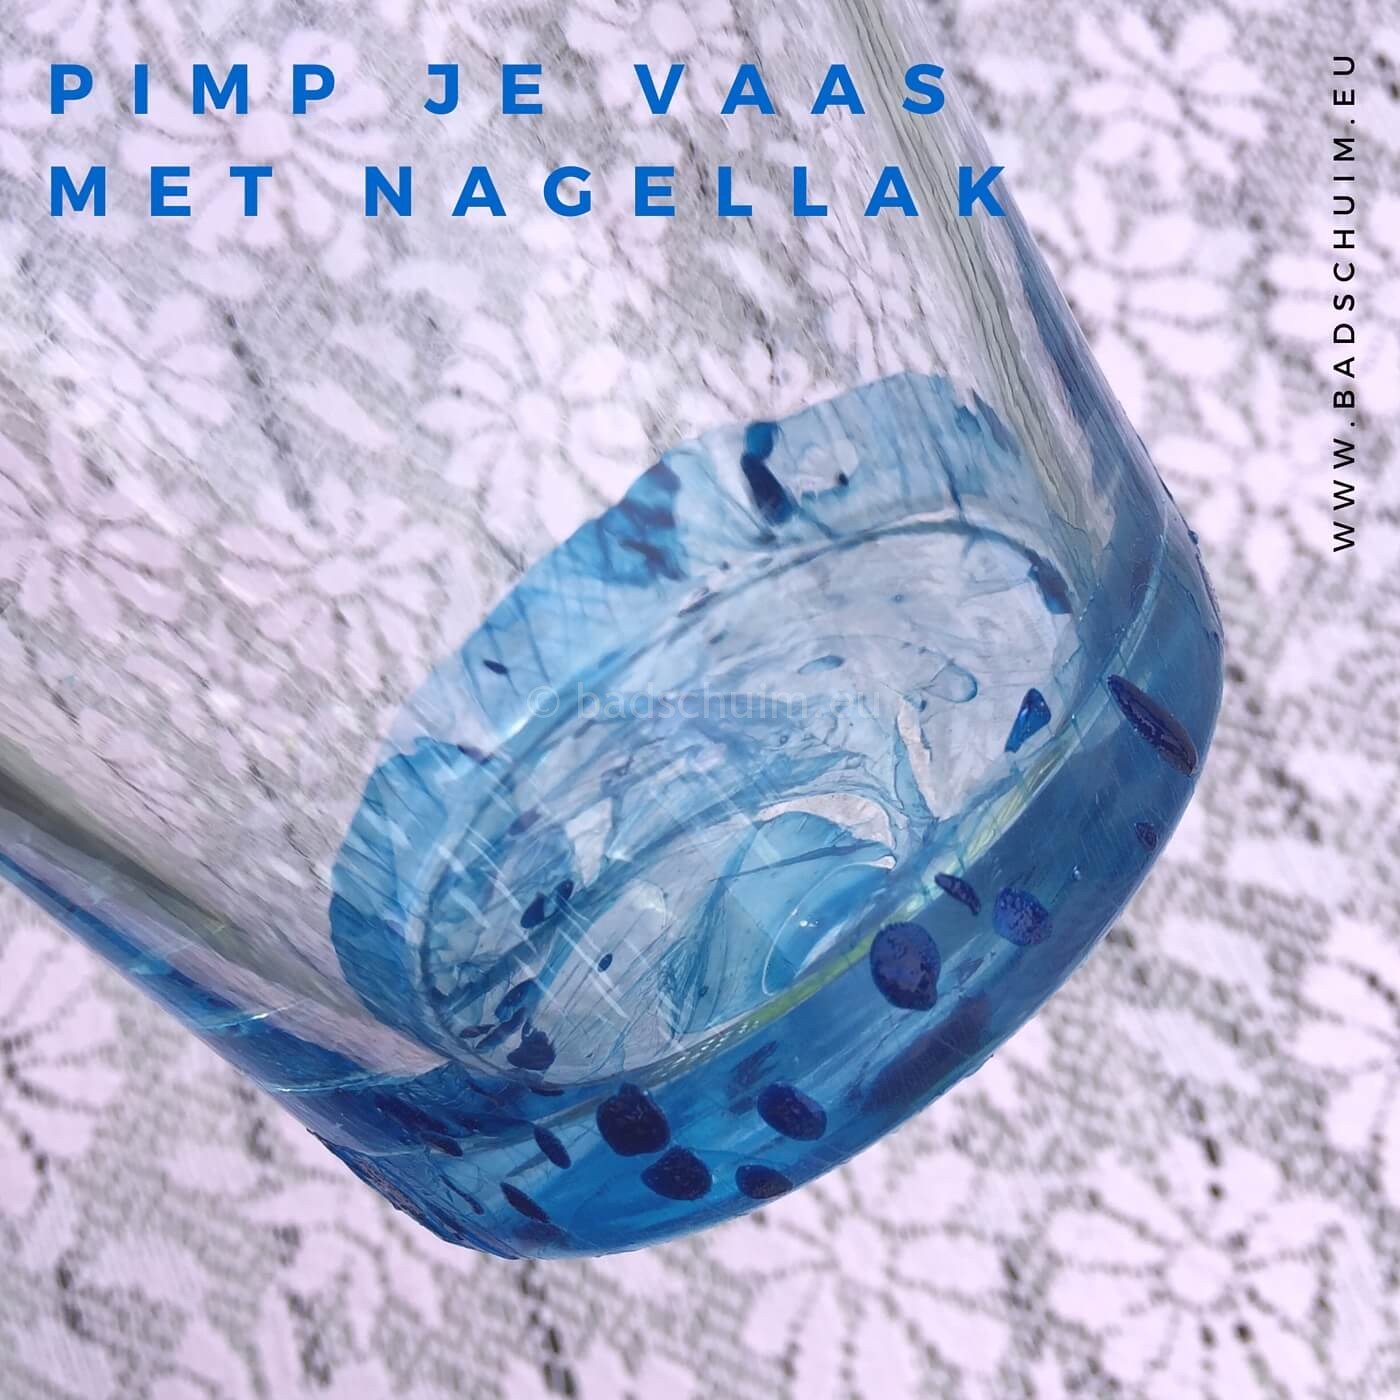 Pimp je vaas met nagellak_DIY stappenplan 01 I creatief lifestyle blog Badschuim